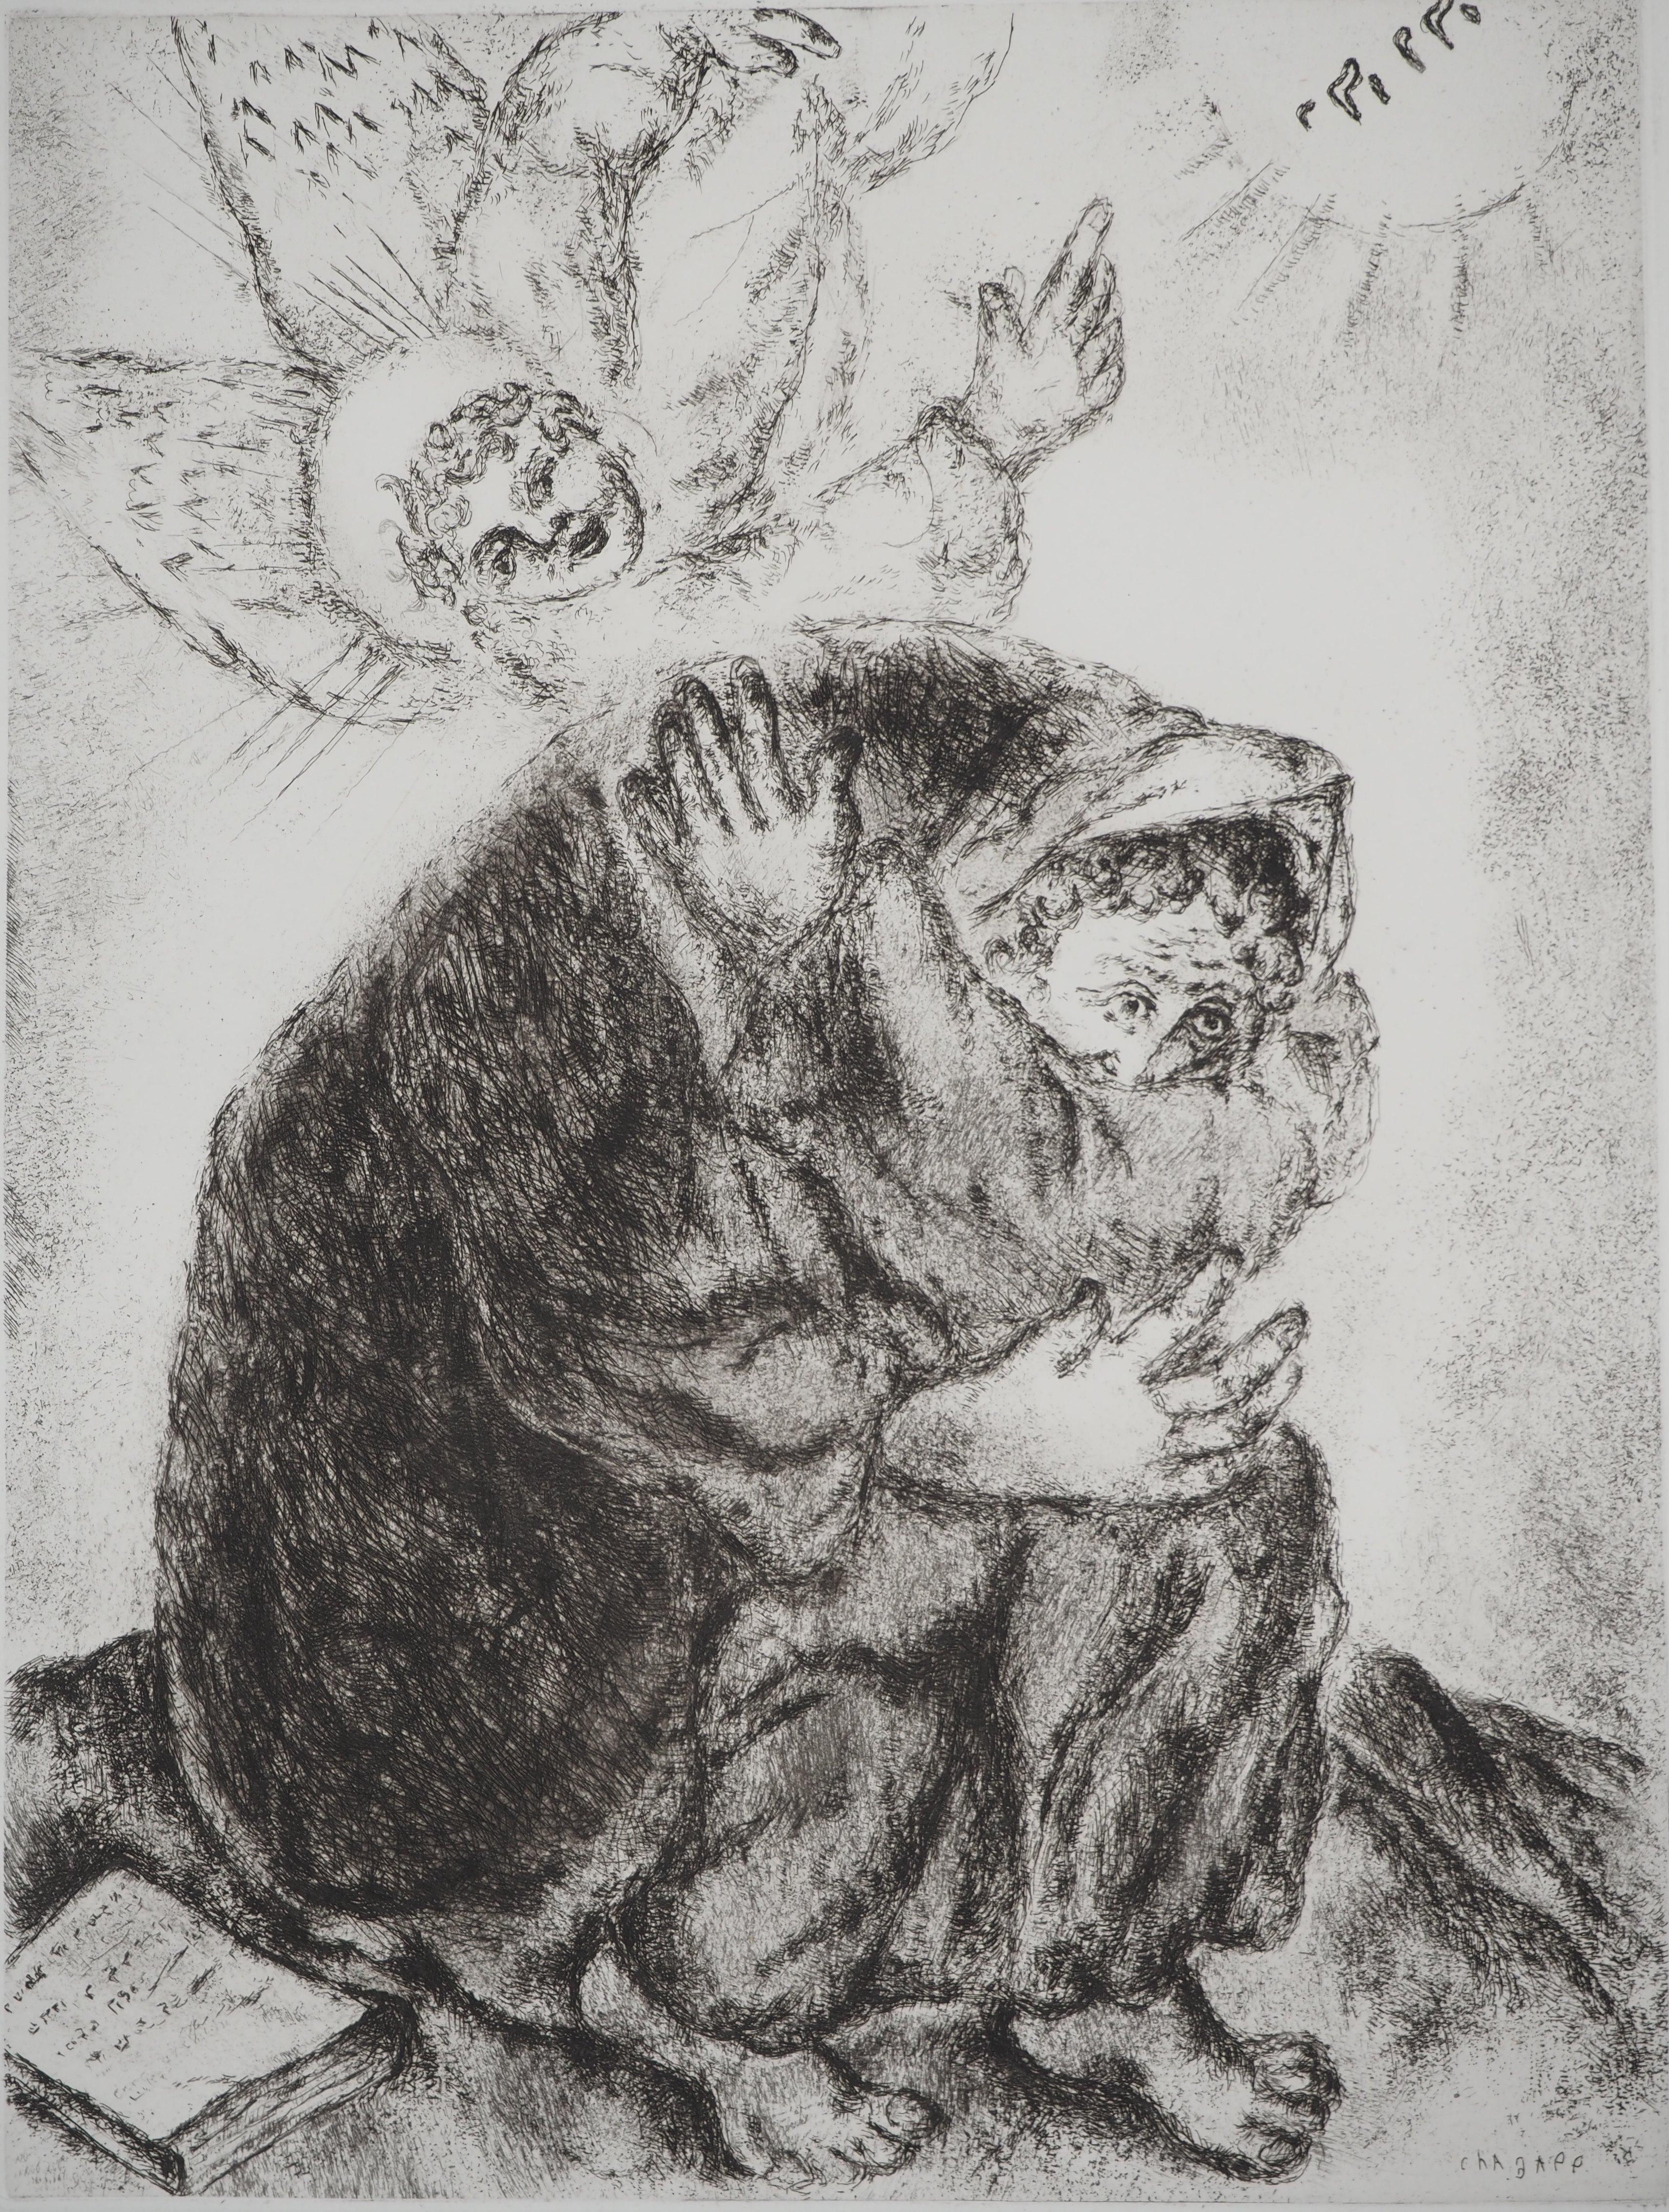 Marc Chagall (1887-1958)
Bible : Prière d'Esaïe, (Prière d'Esaïe), 1939

Gravure originale
Signature imprimée dans la plaque
Sur vélin de Montval, 44 x 33.5 cm (c. 17.3 x 13.1 inch)

INFORMATION : Publié par Vollard / Tériade en 1956

RÉFÉRENCE :